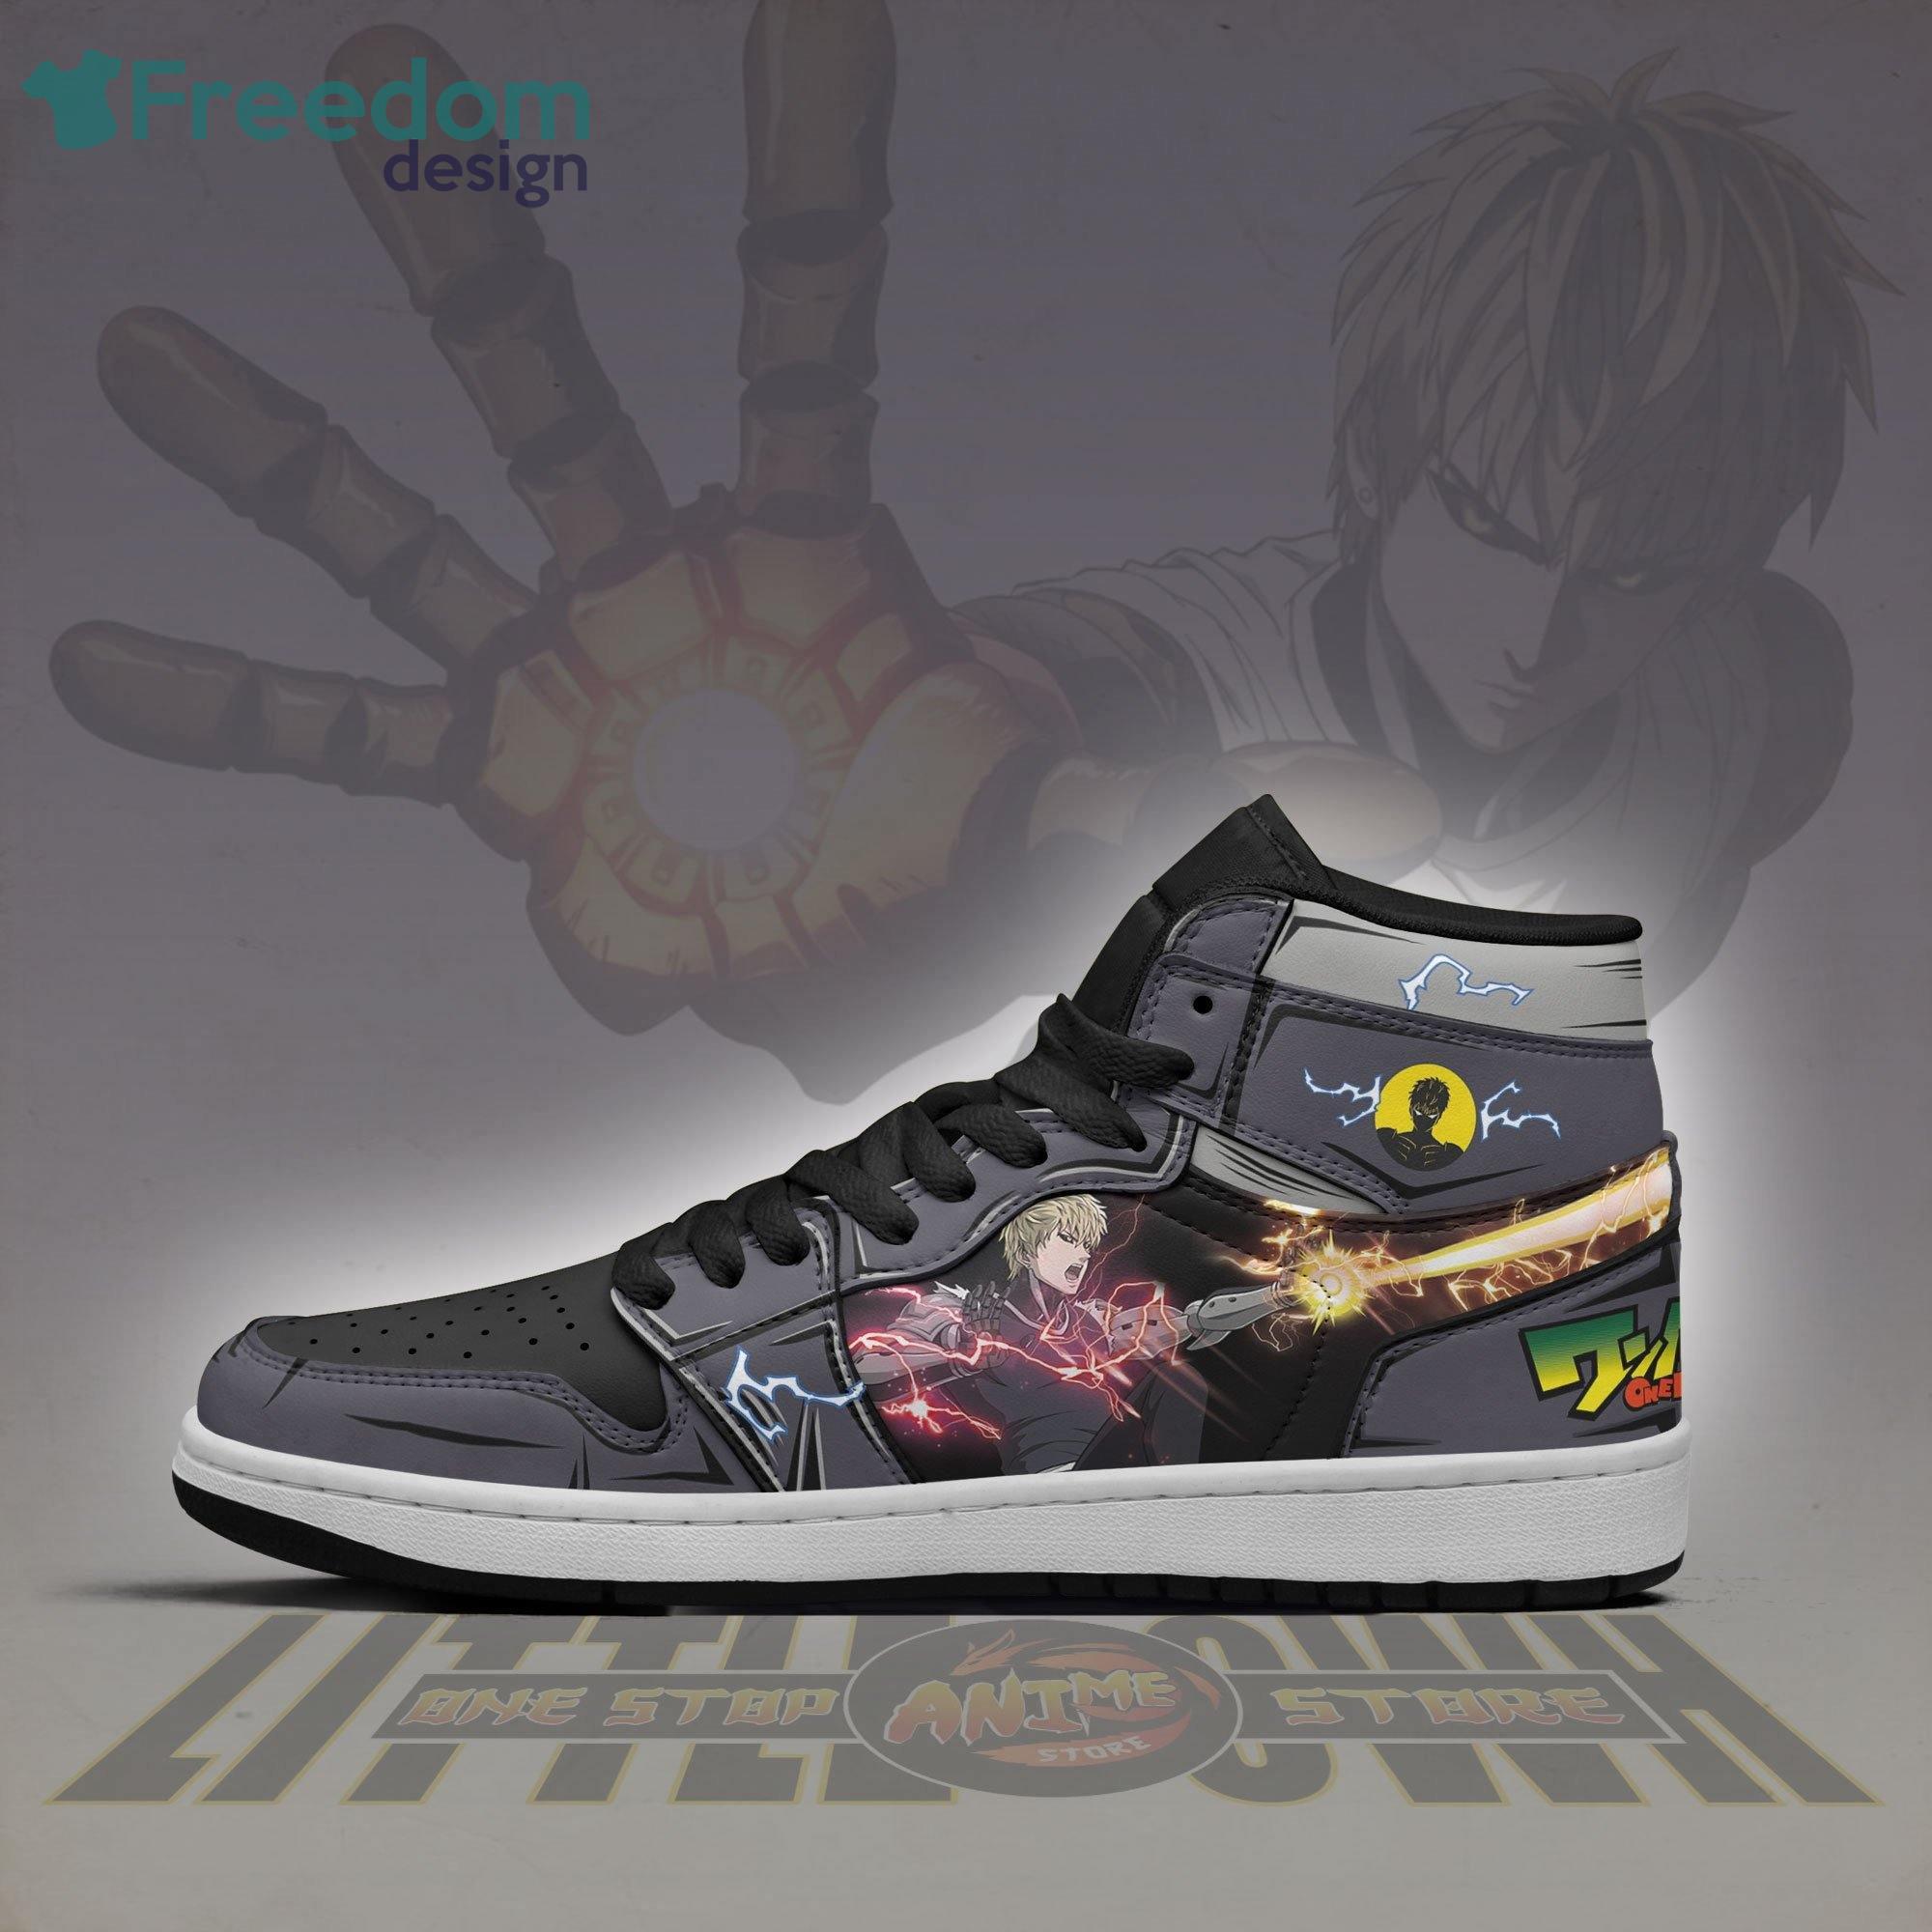 One Punch Man Air Jordan Hightop Shoes Genos Anime